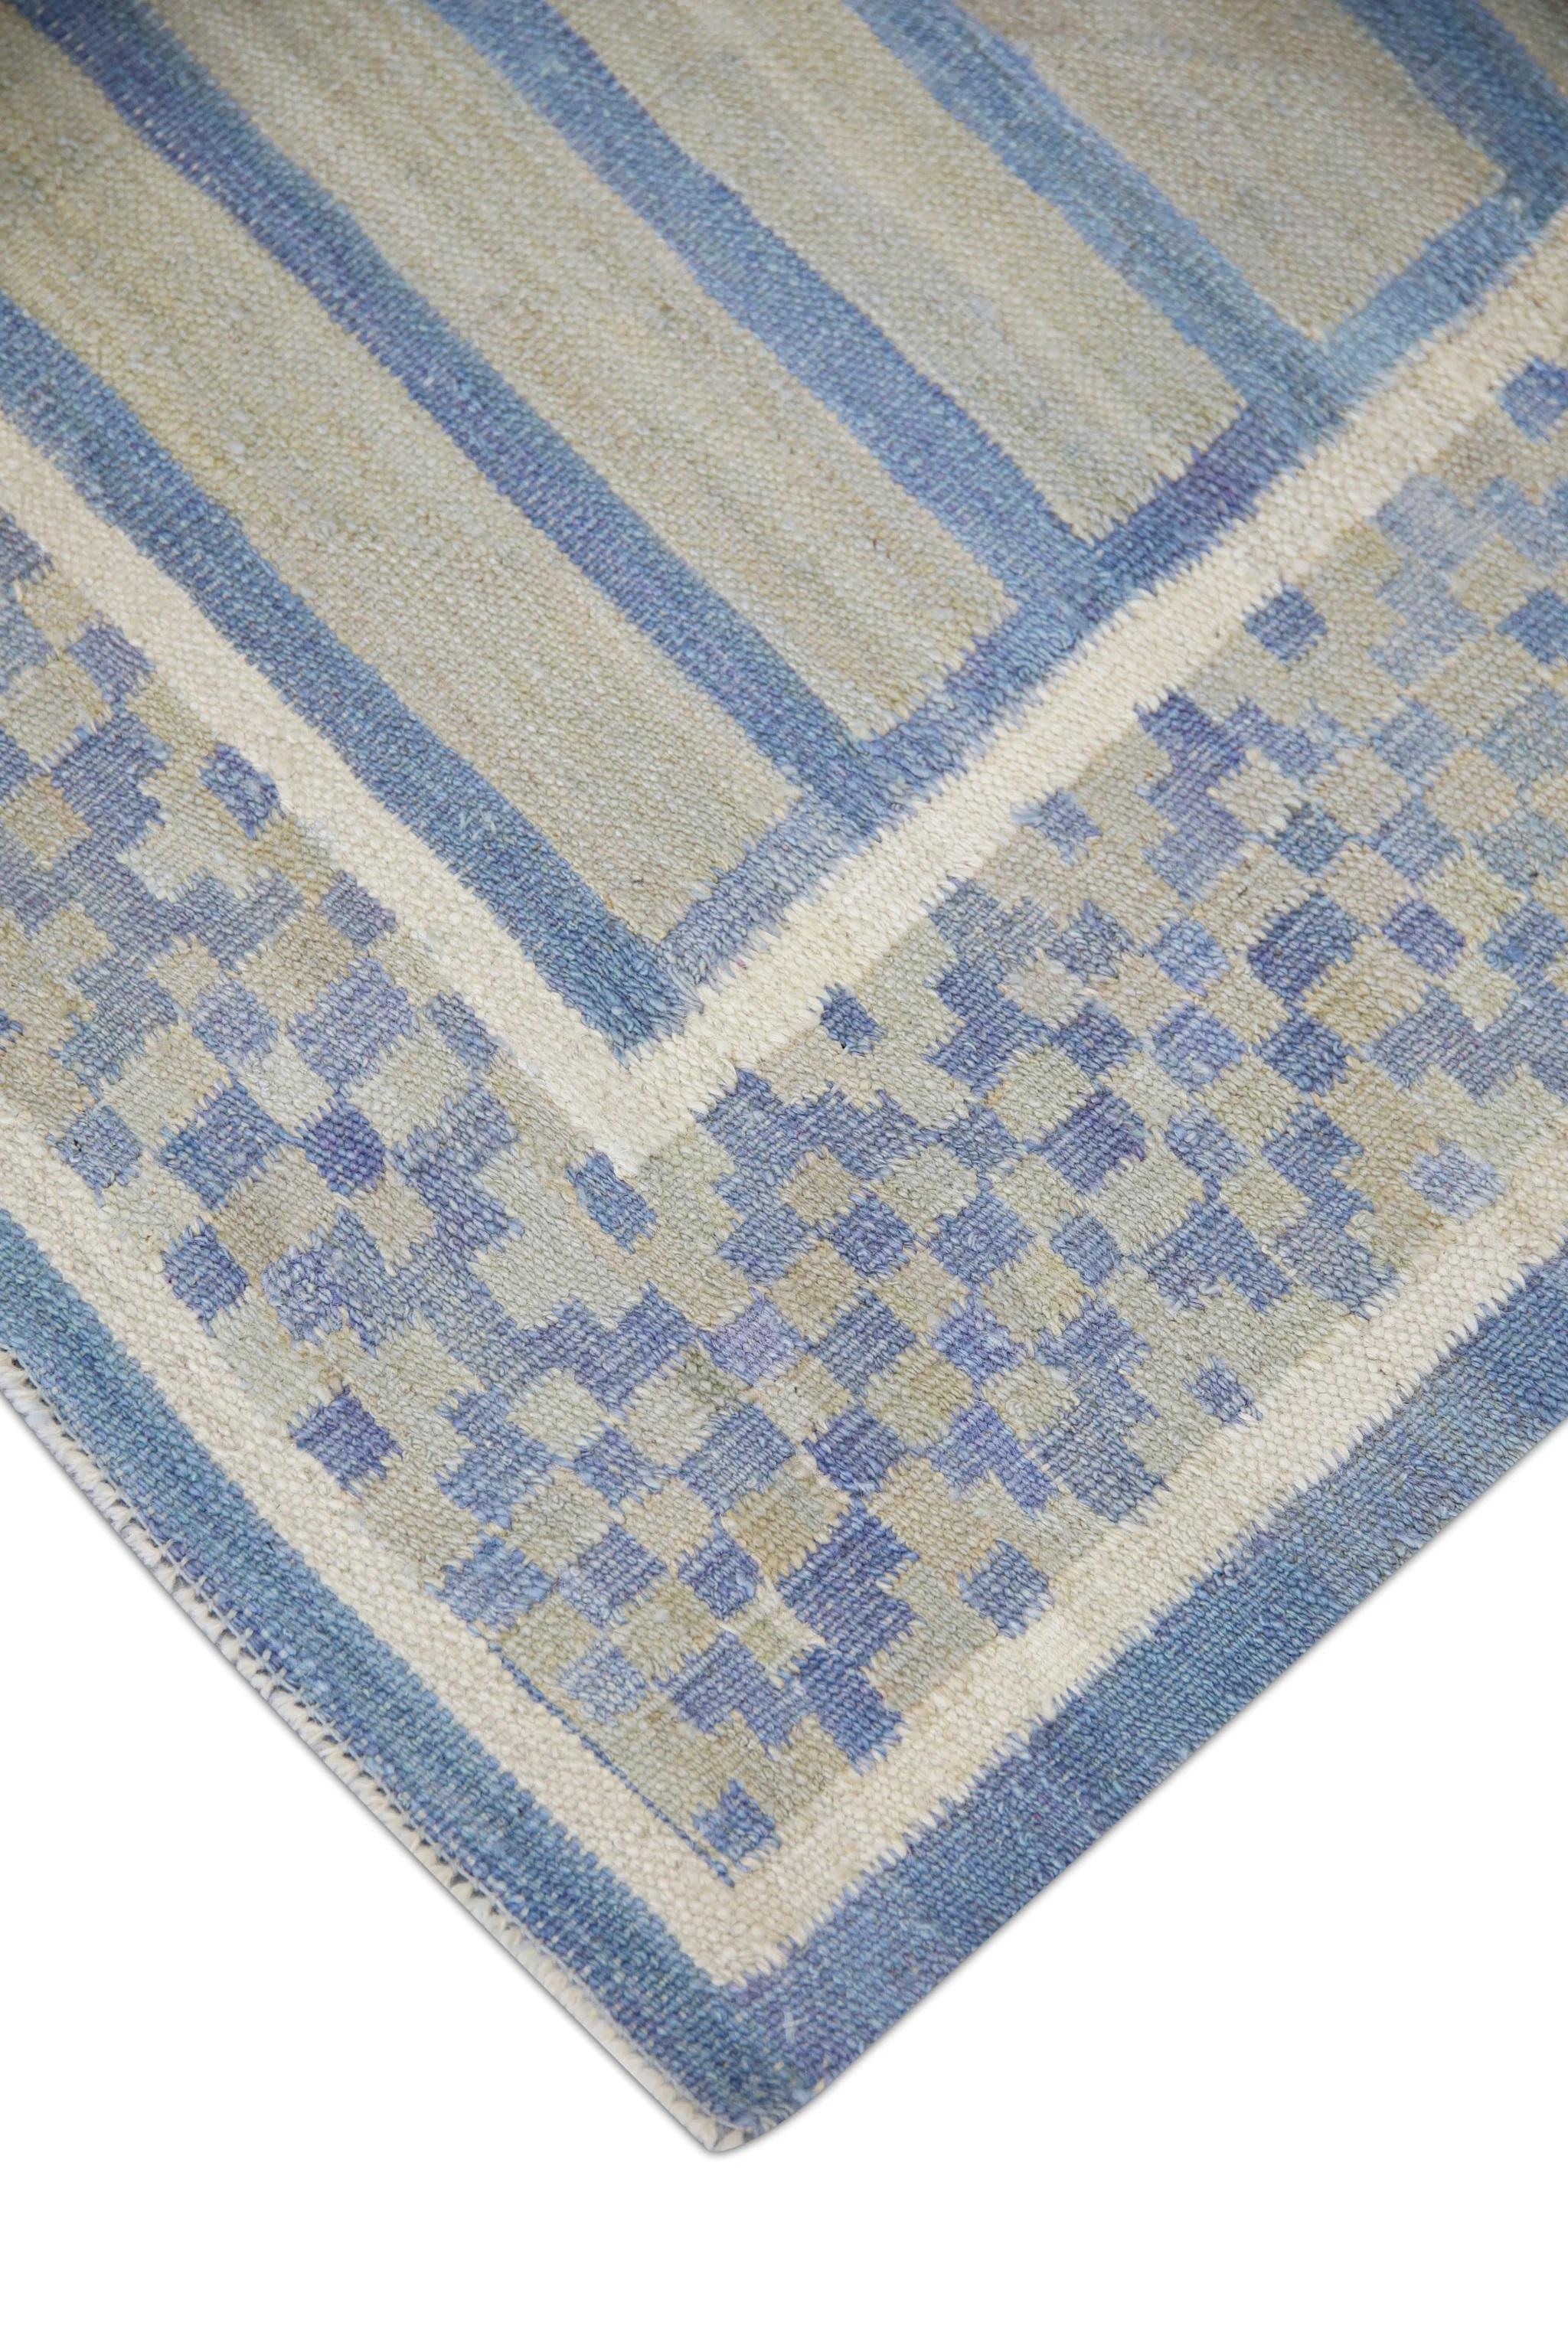 Ce magnifique tapis Kilim turc à tissage plat est un chef-d'œuvre de l'artisanat traditionnel. Chaque tapis est méticuleusement tissé à la main par des artisans qualifiés selon des techniques ancestrales transmises de génération en génération. Le